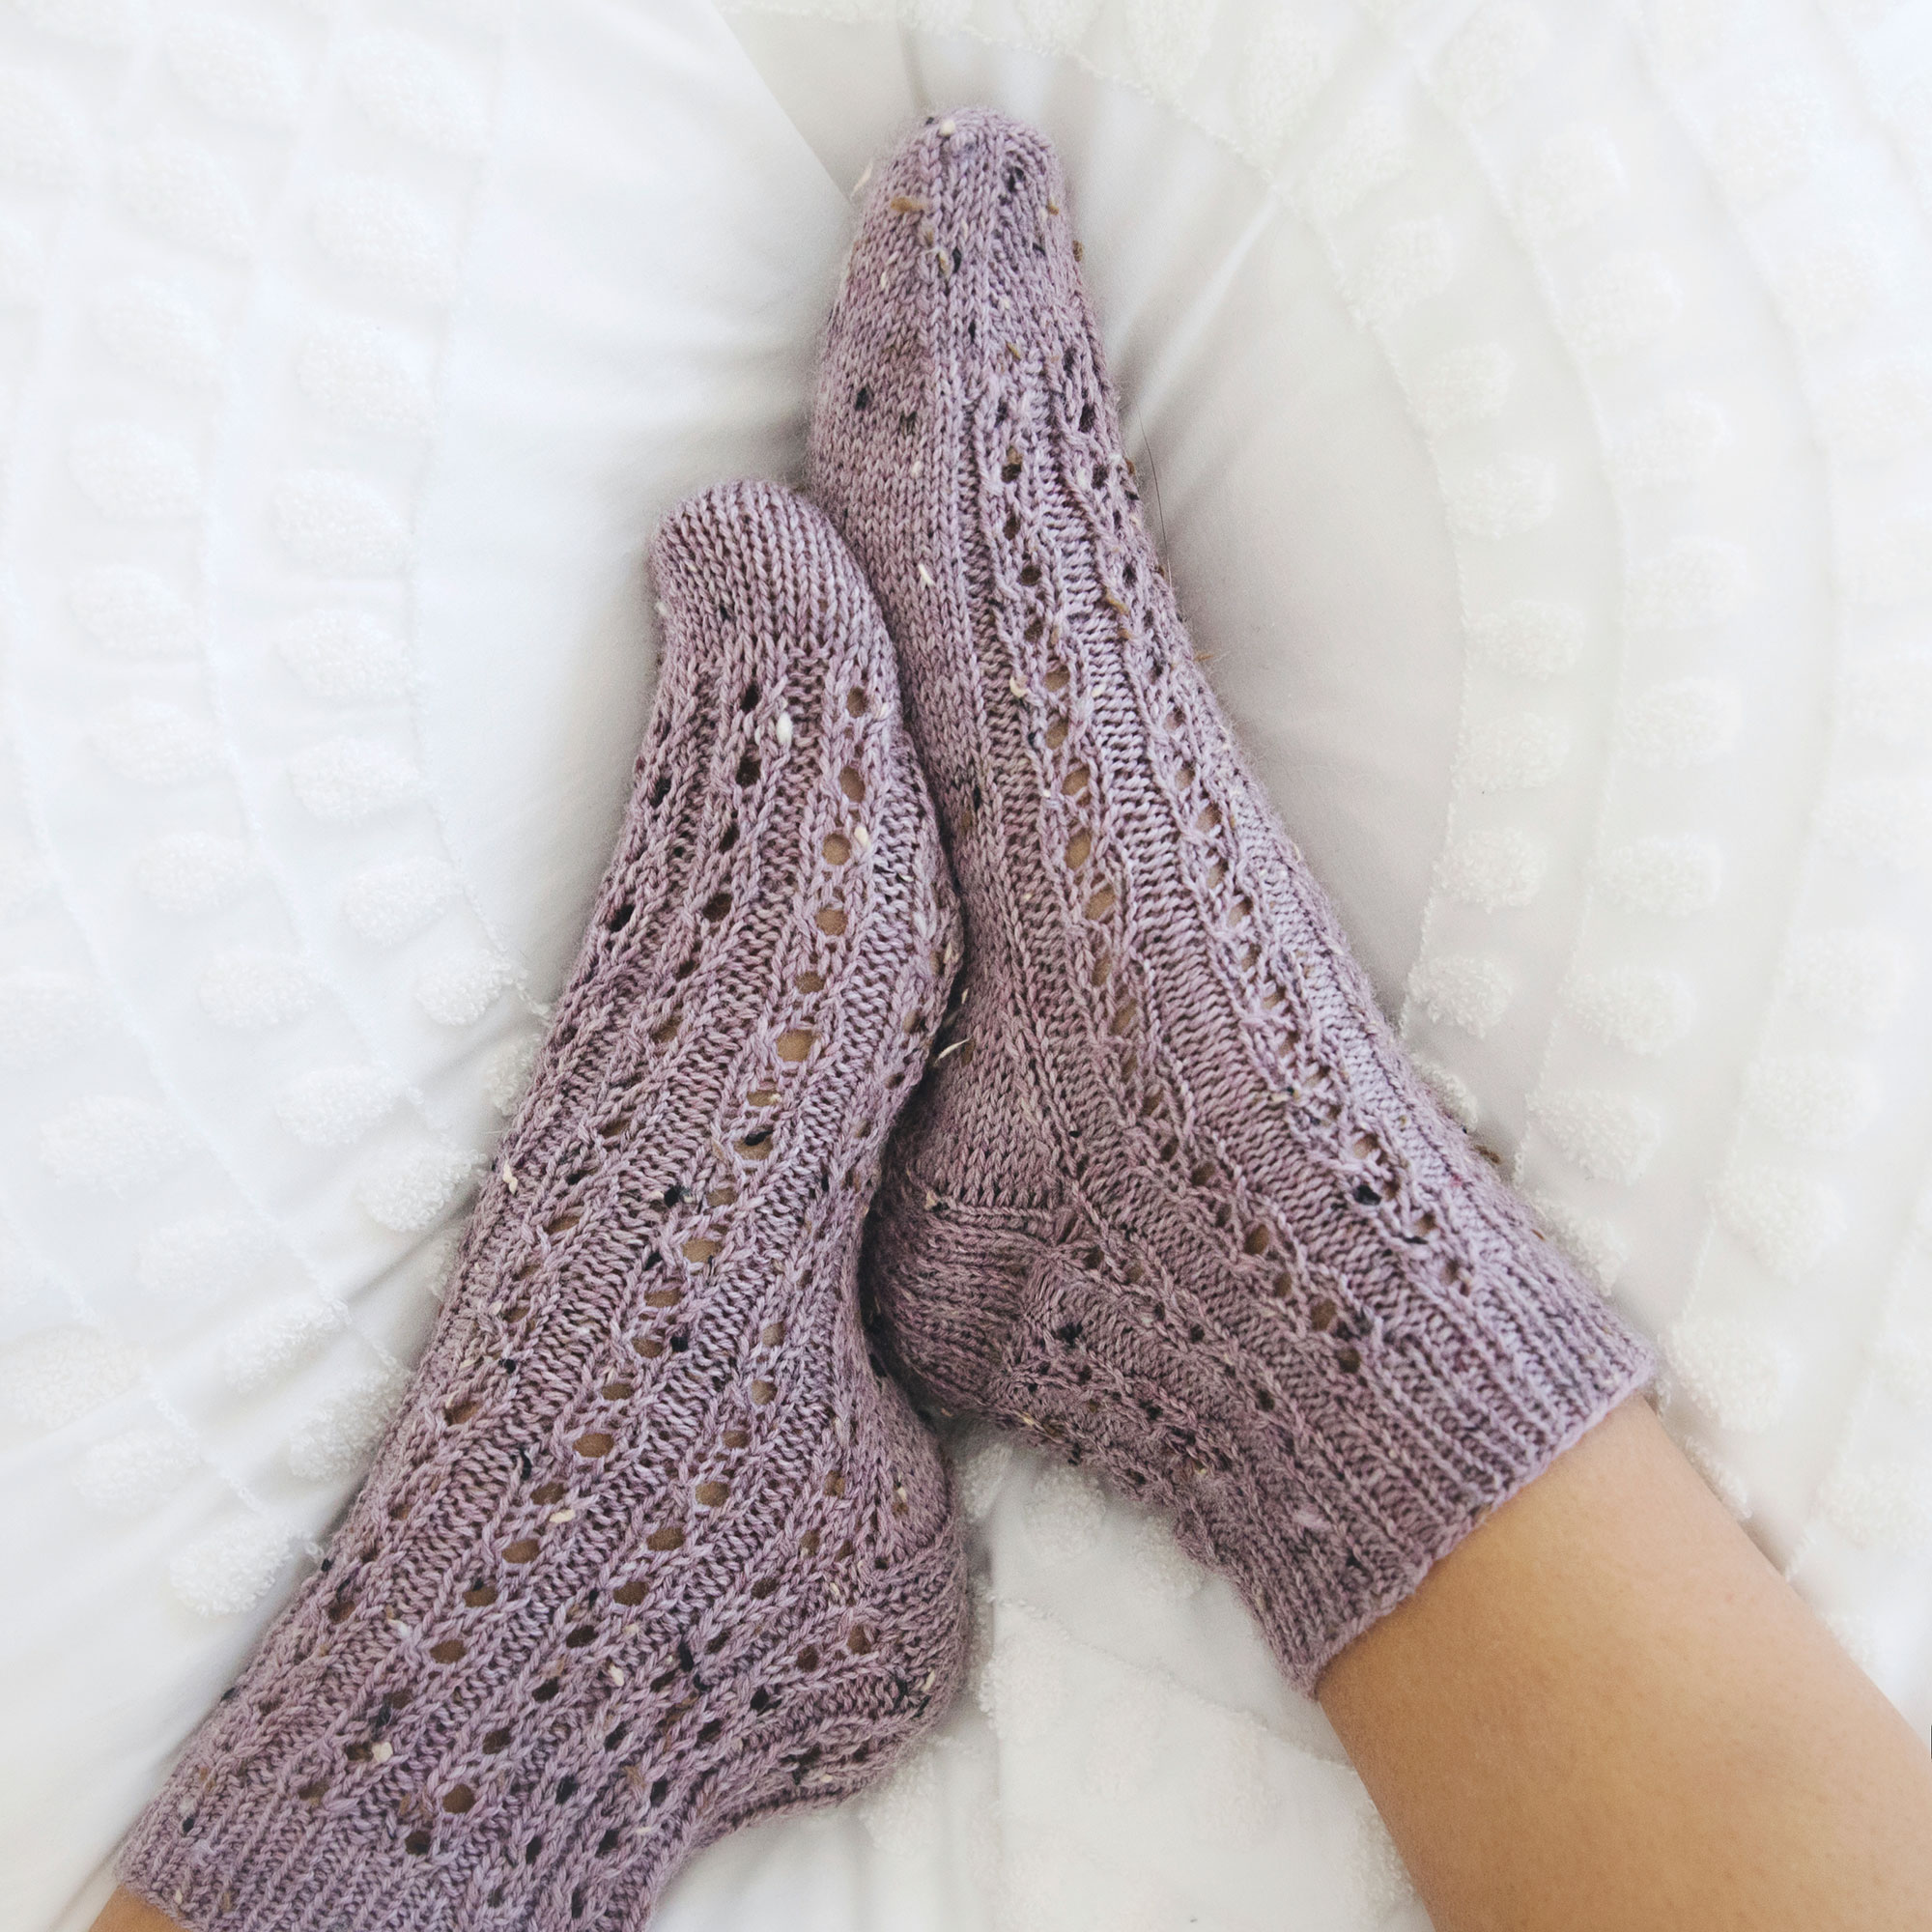 The Beginner Socks Knitting Pattern